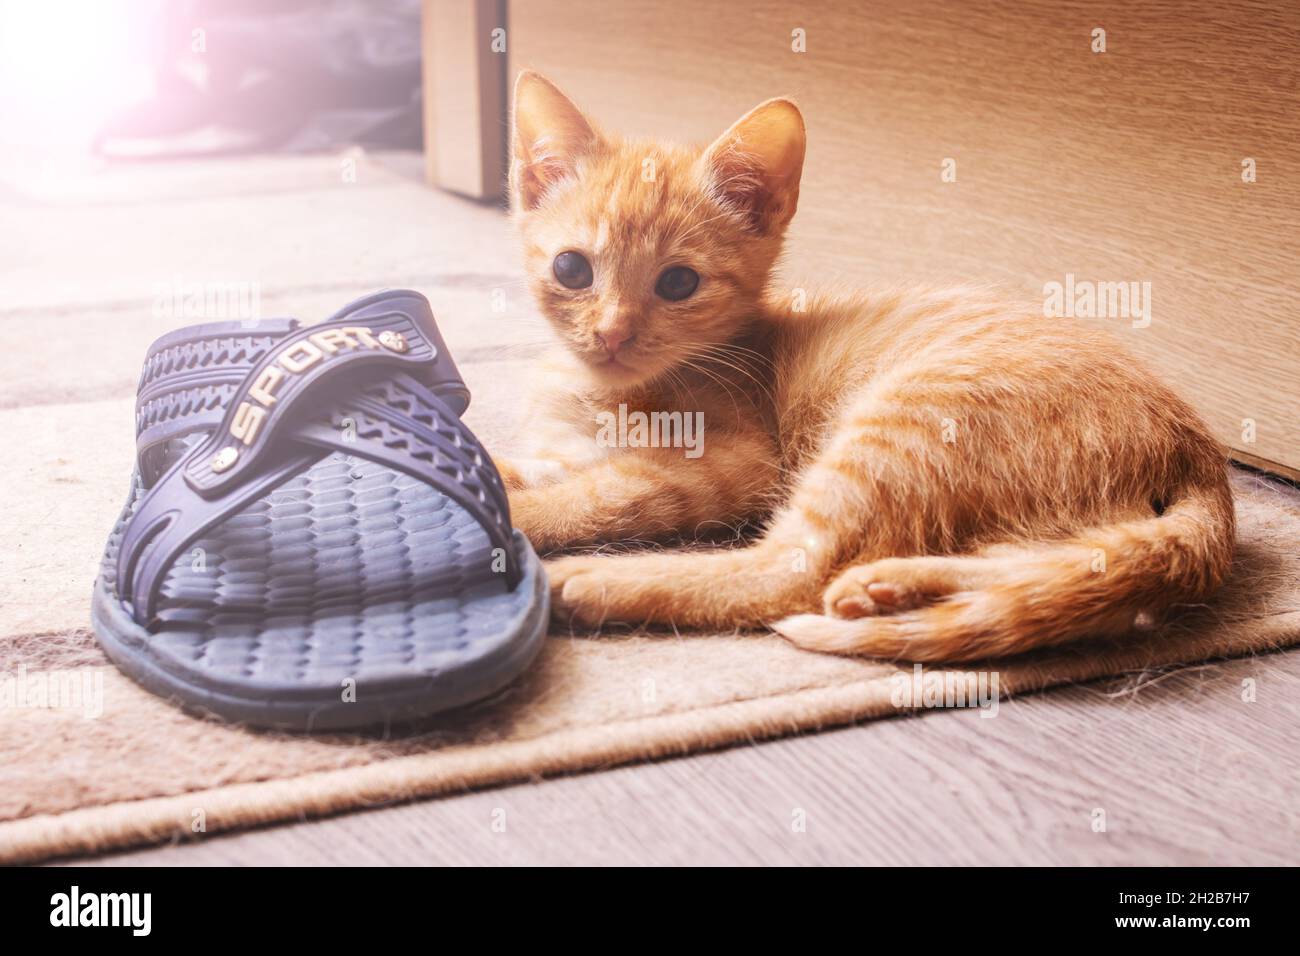 Cat Lover's Dream: Cat Shaped Slippers for Cozy Feet – Slipper Slappers